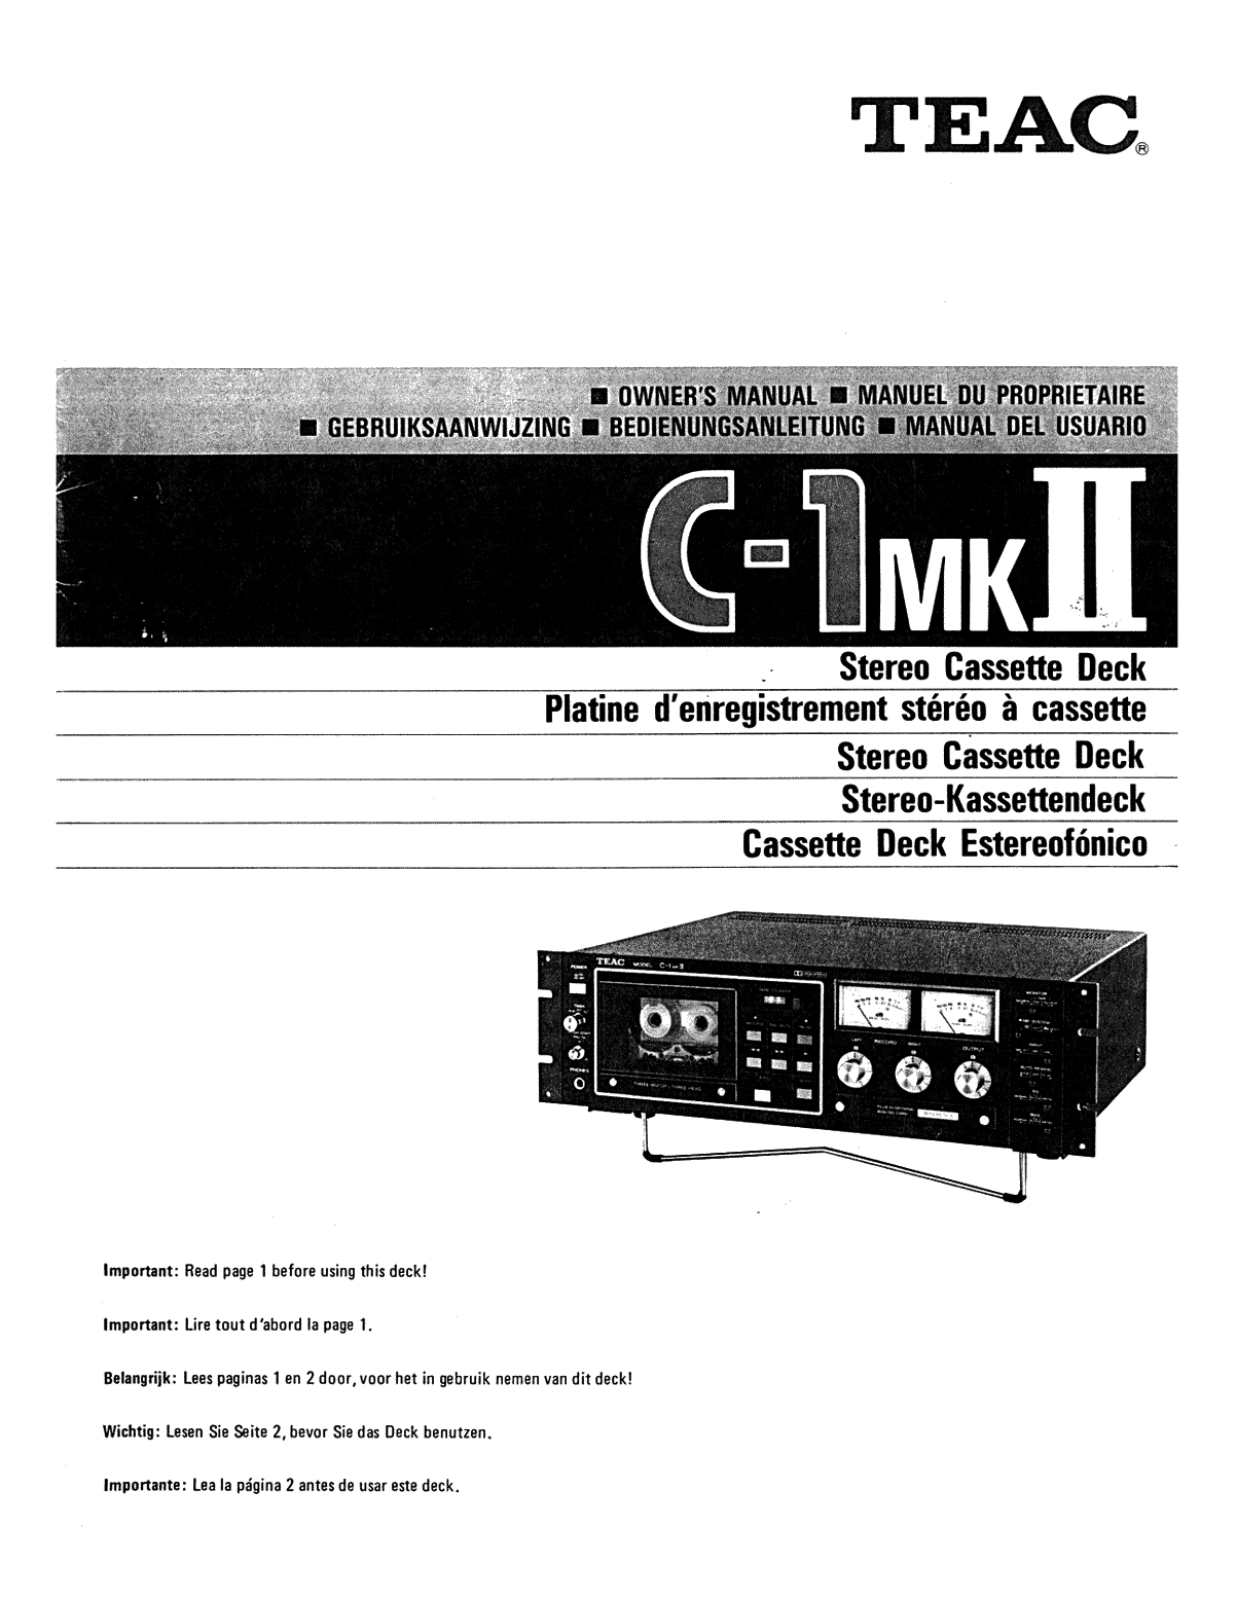 TEAC C-1 Mk2 Owners manual